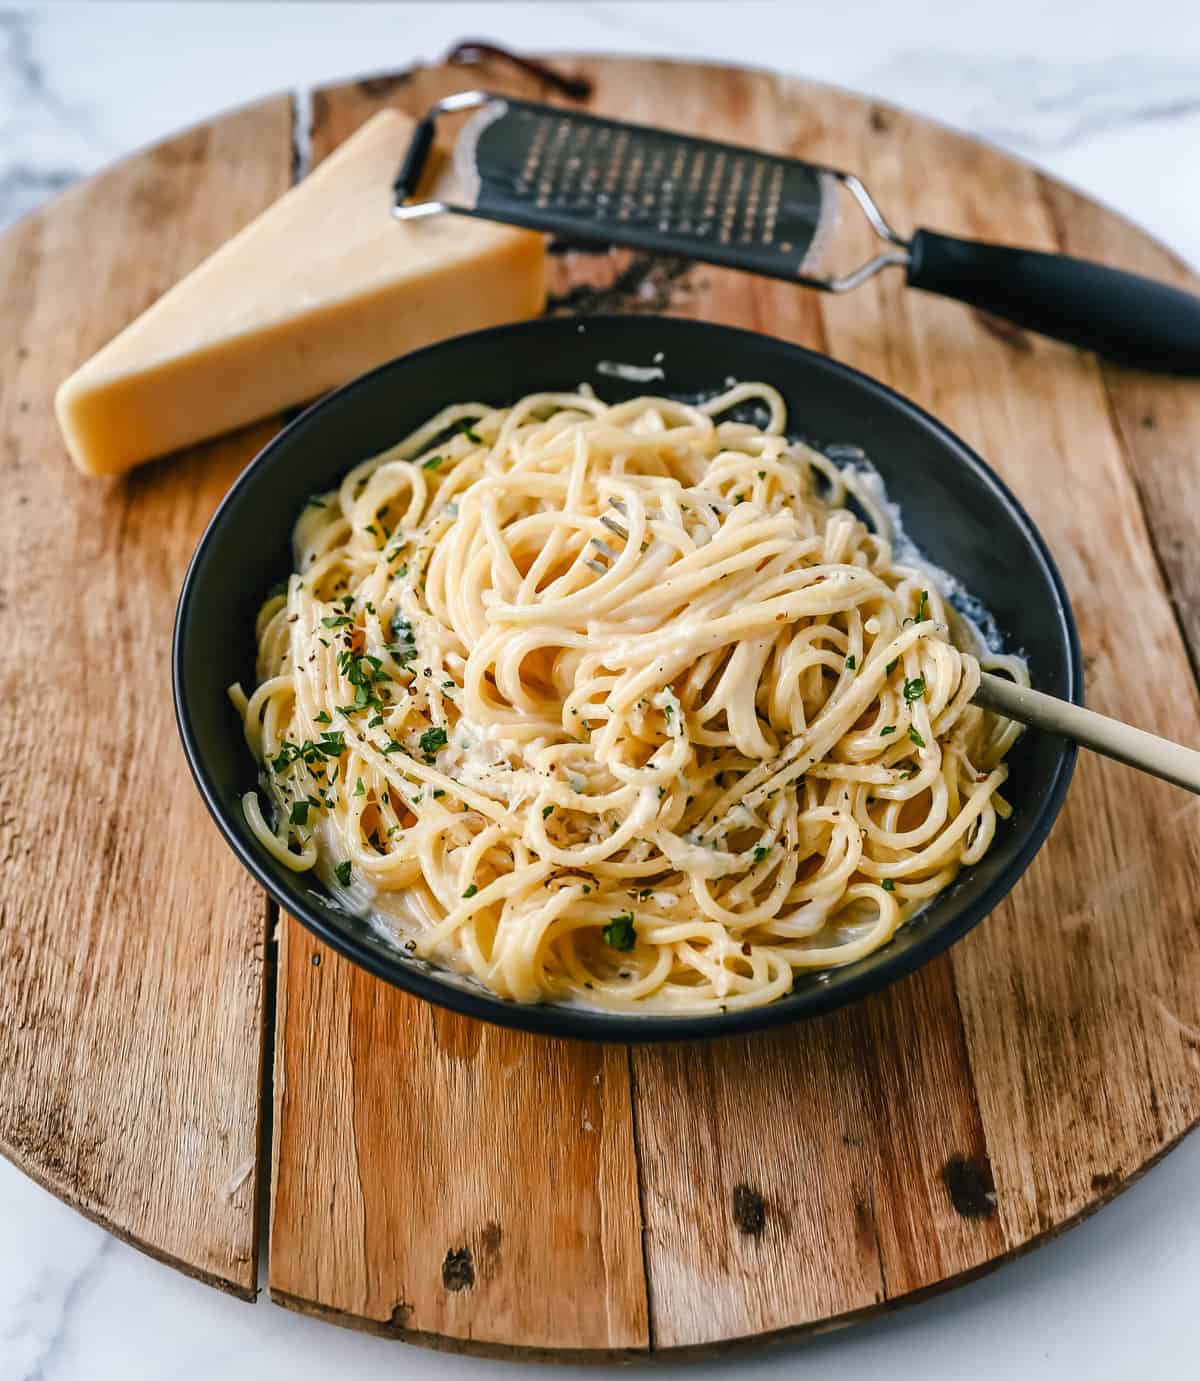 Break-Up Makaronai yra kreminiai 3 sūrių spagečių receptai, pagaminti iš sviesto, česnako, grietinėlės, sultinio, itališkų sūrių, prieskonių ir įmaišyti į spagečius.  Tai geriausias žinomas kreminių spagečių receptas, padedantis išgydyti išsiskyrimą!